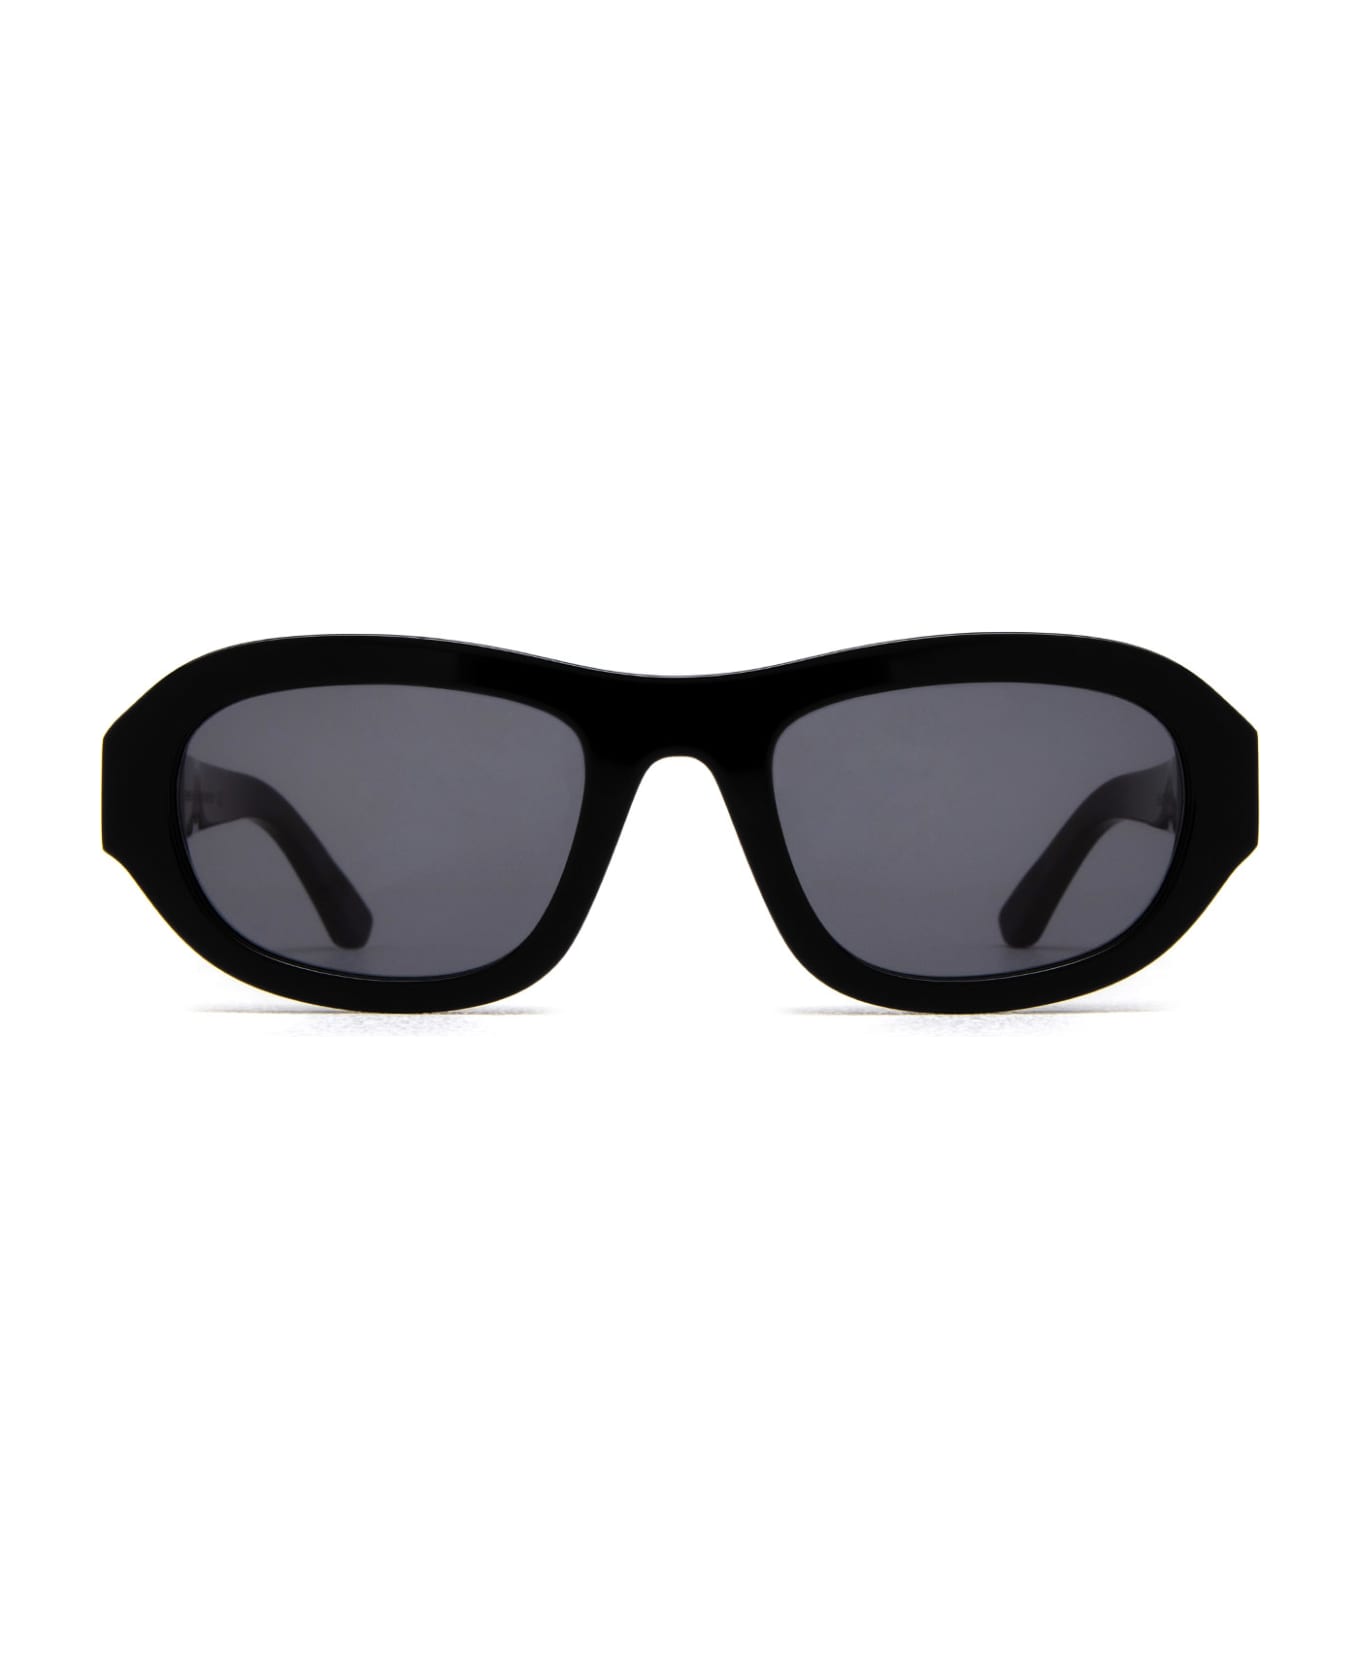 Huma Lee Black Sunglasses - BLACK